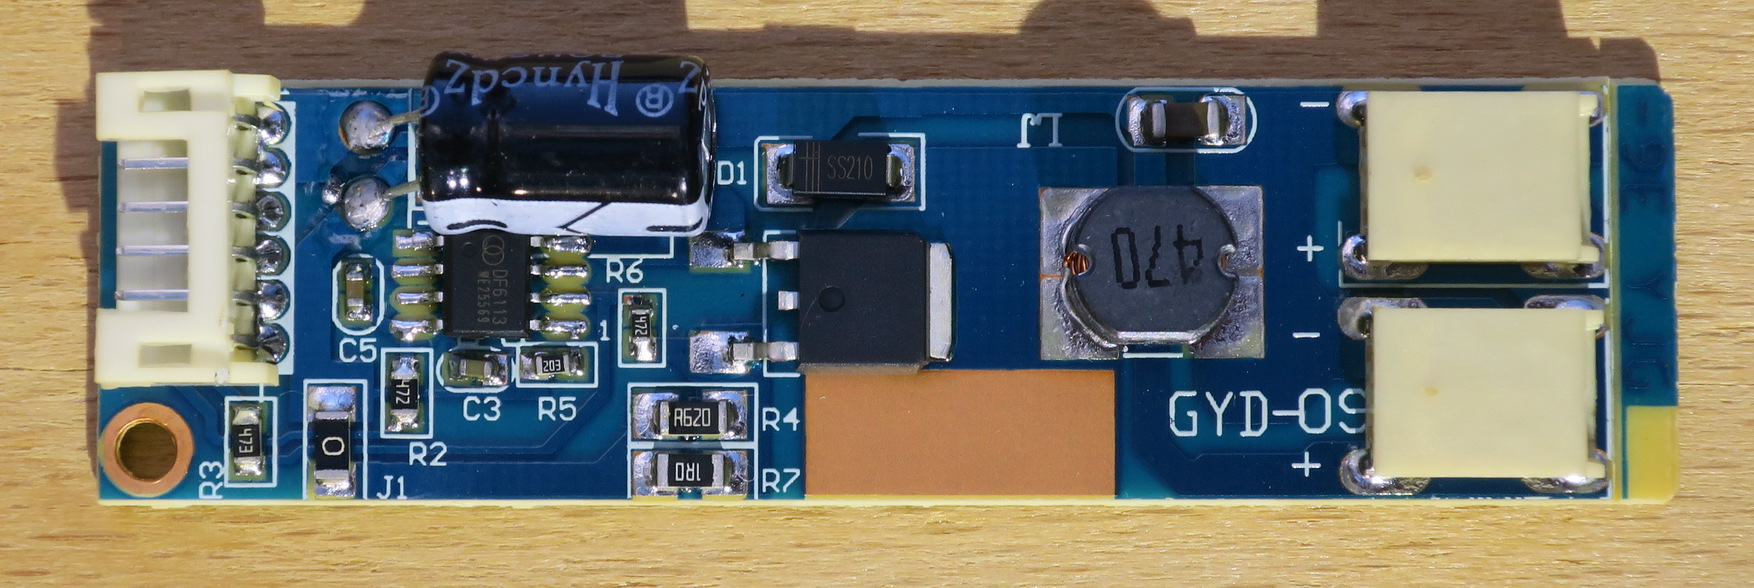 Переделка подсветки монитора на светодиодную схема на транзисторах